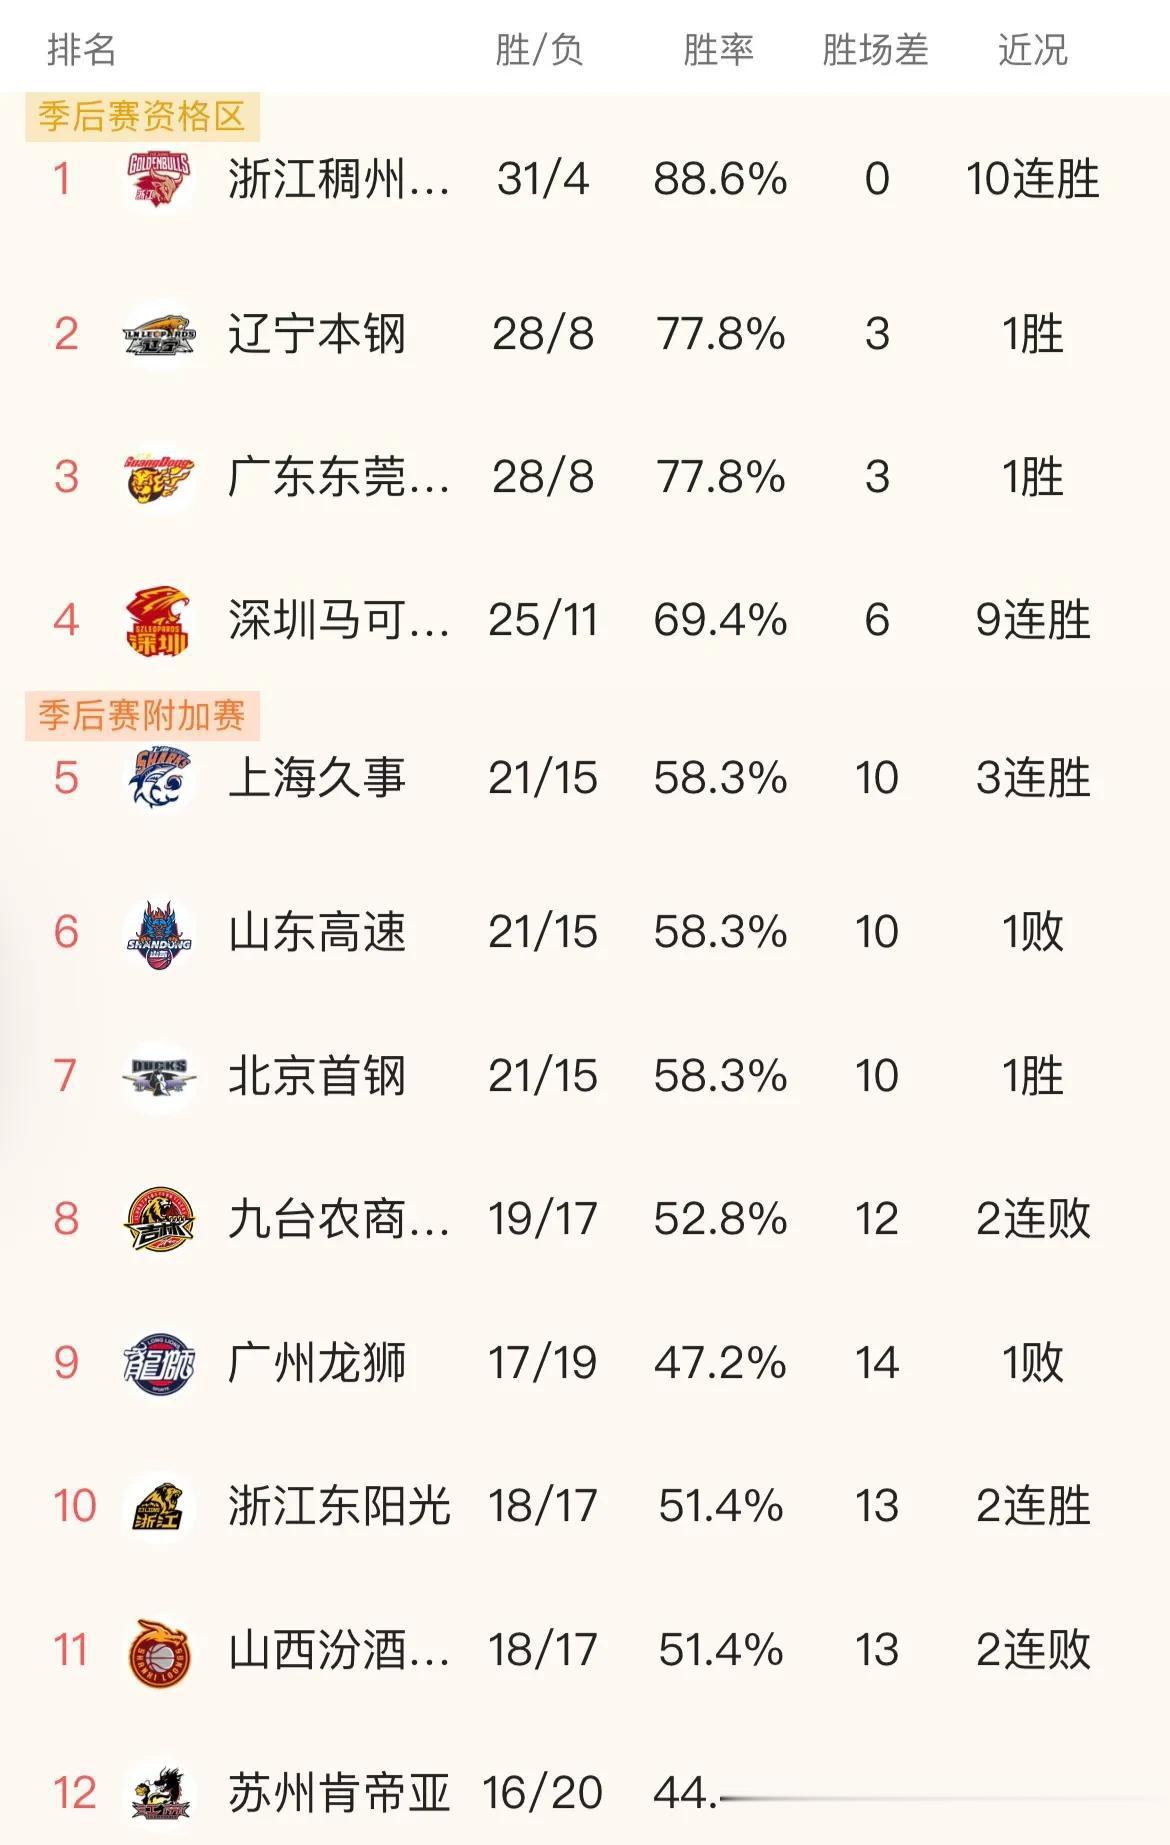 上海：我21胜15负！
山东：我21胜15负！
北京：我21胜15负！

随着上(1)